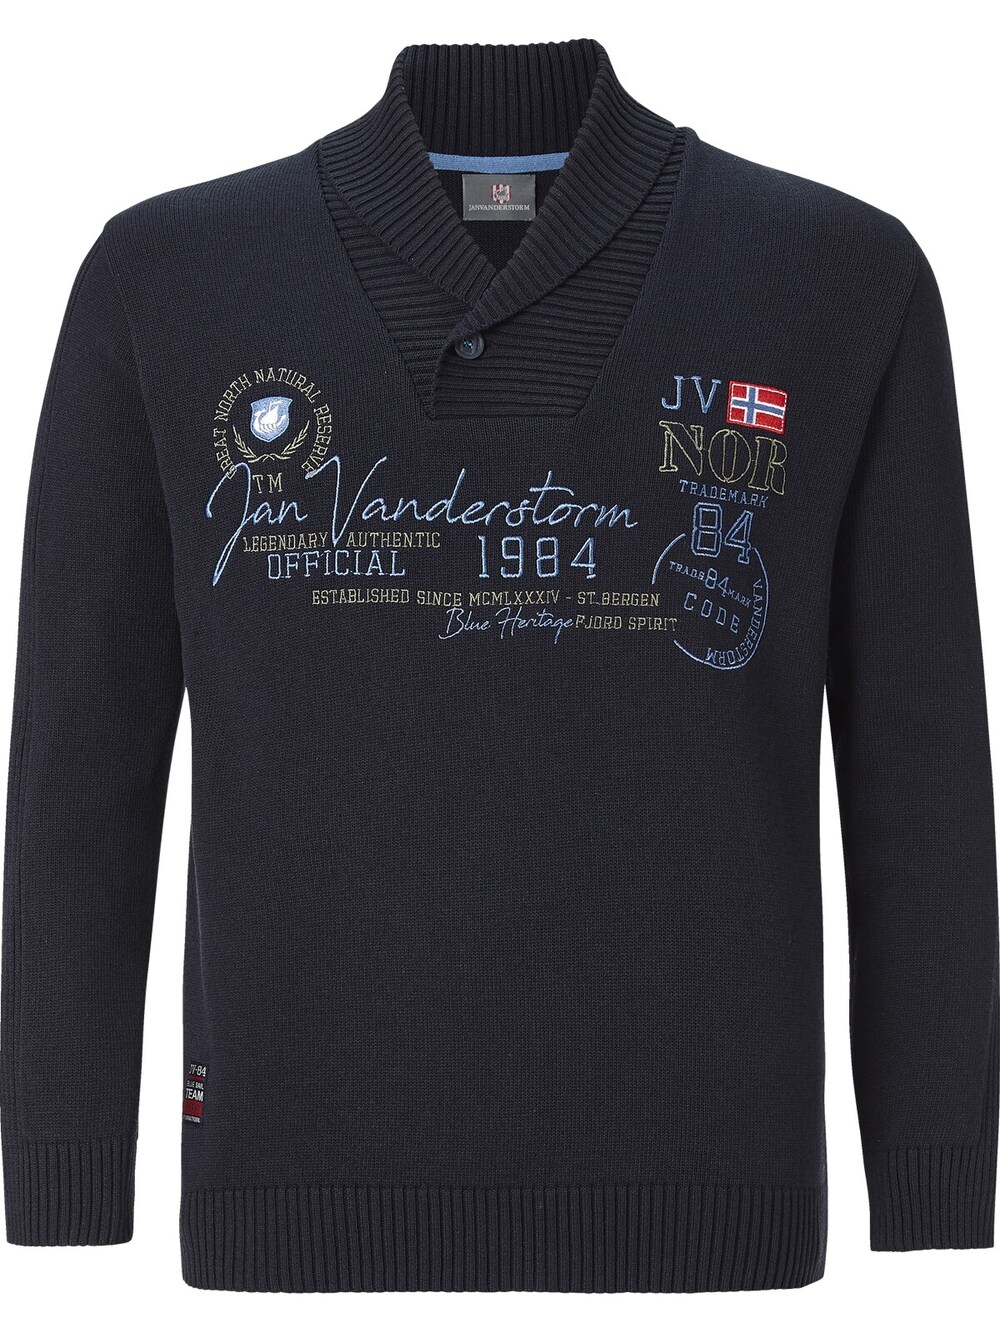 Свитер Jan Vanderstorm Hamar, темно-синий свитер jan vanderstorm cajetan темно синий